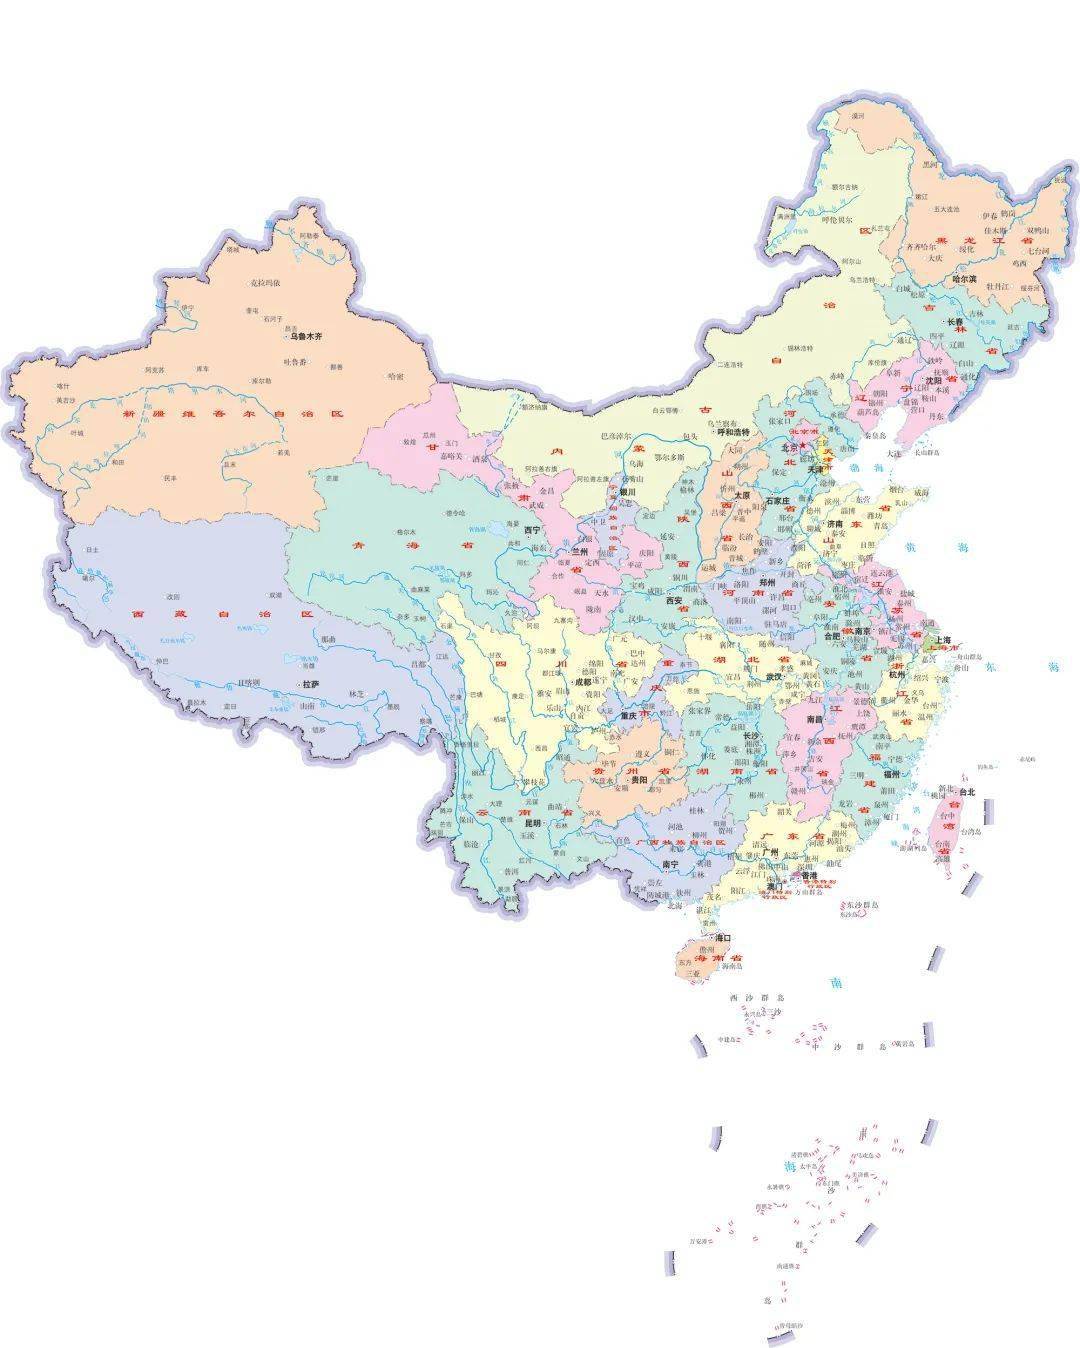 中国七个地区地图划分图片